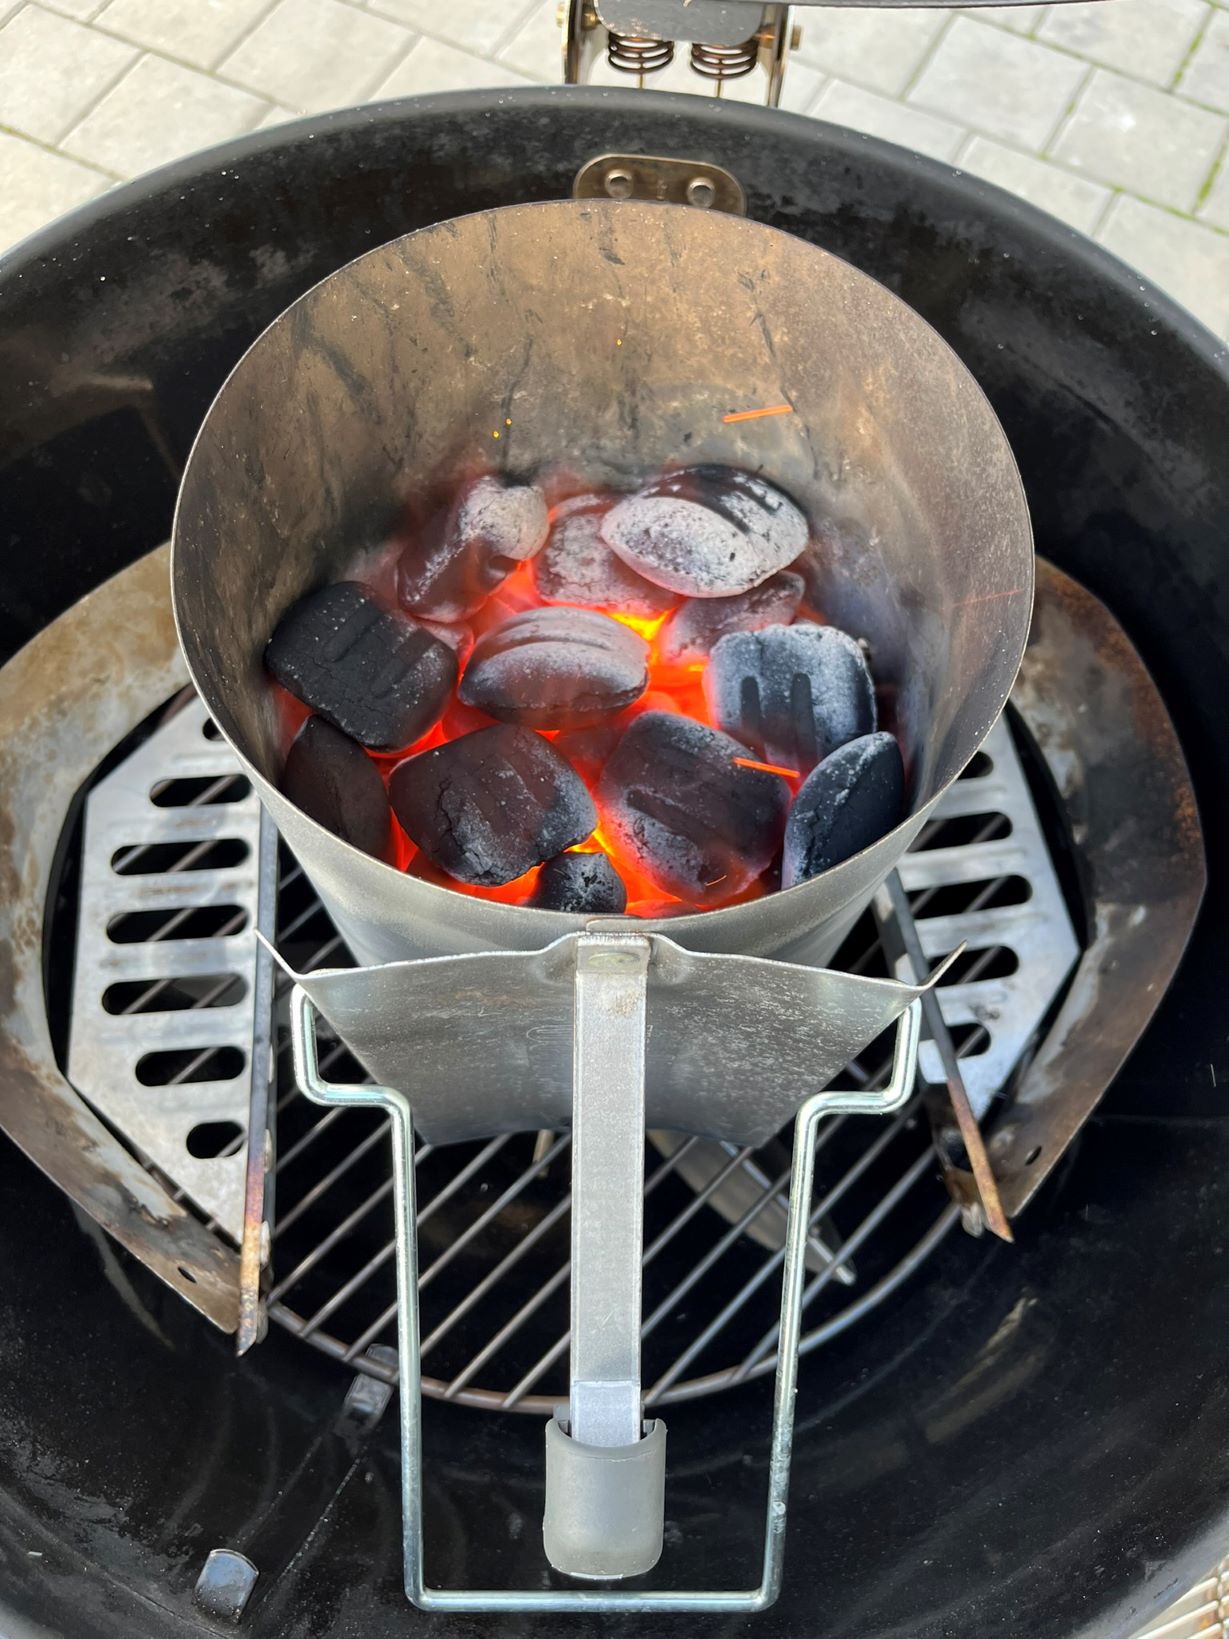 Zapalování briket v grilu v komínku - před vysypáním